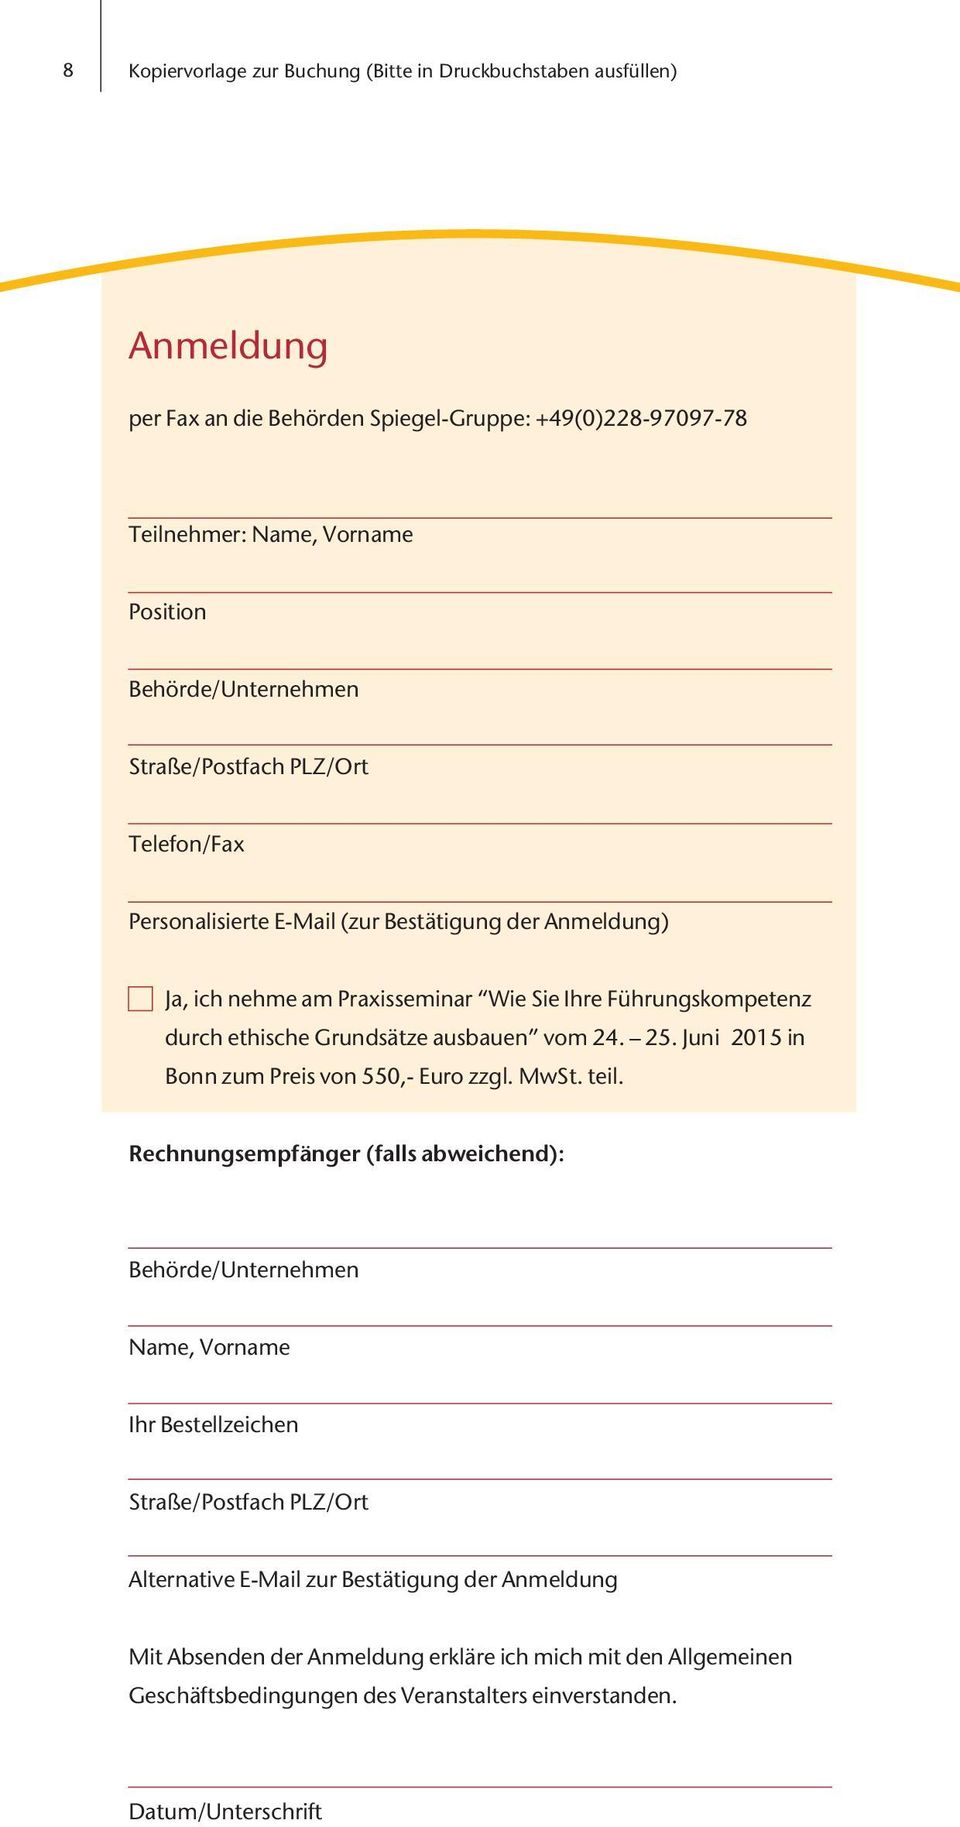 Grundsätze ausbauen vom 24. 25. Juni 2015 in Bonn zum Preis von 550,- Euro zzgl. MwSt. teil.